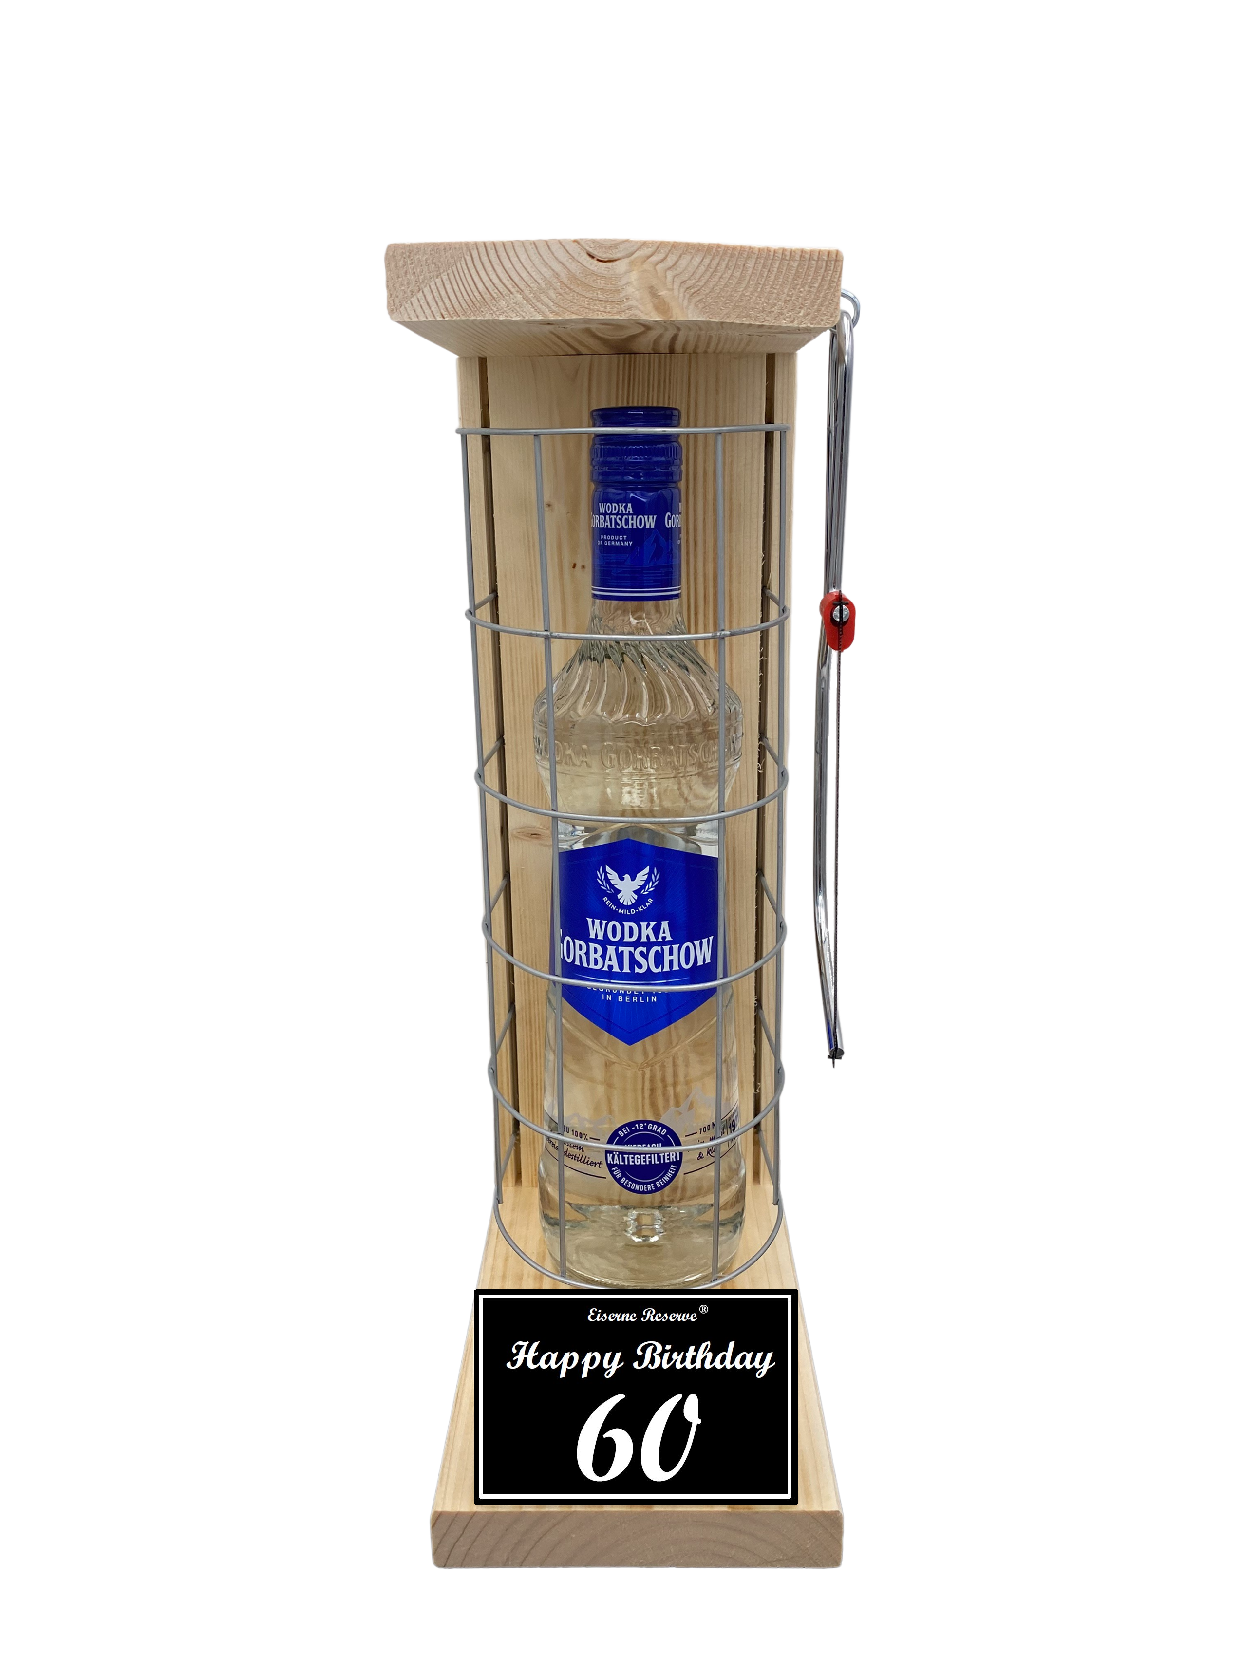 Wodka Geschenk zum 60 Geburtstag - Eiserne Reserve Gitterkäfig